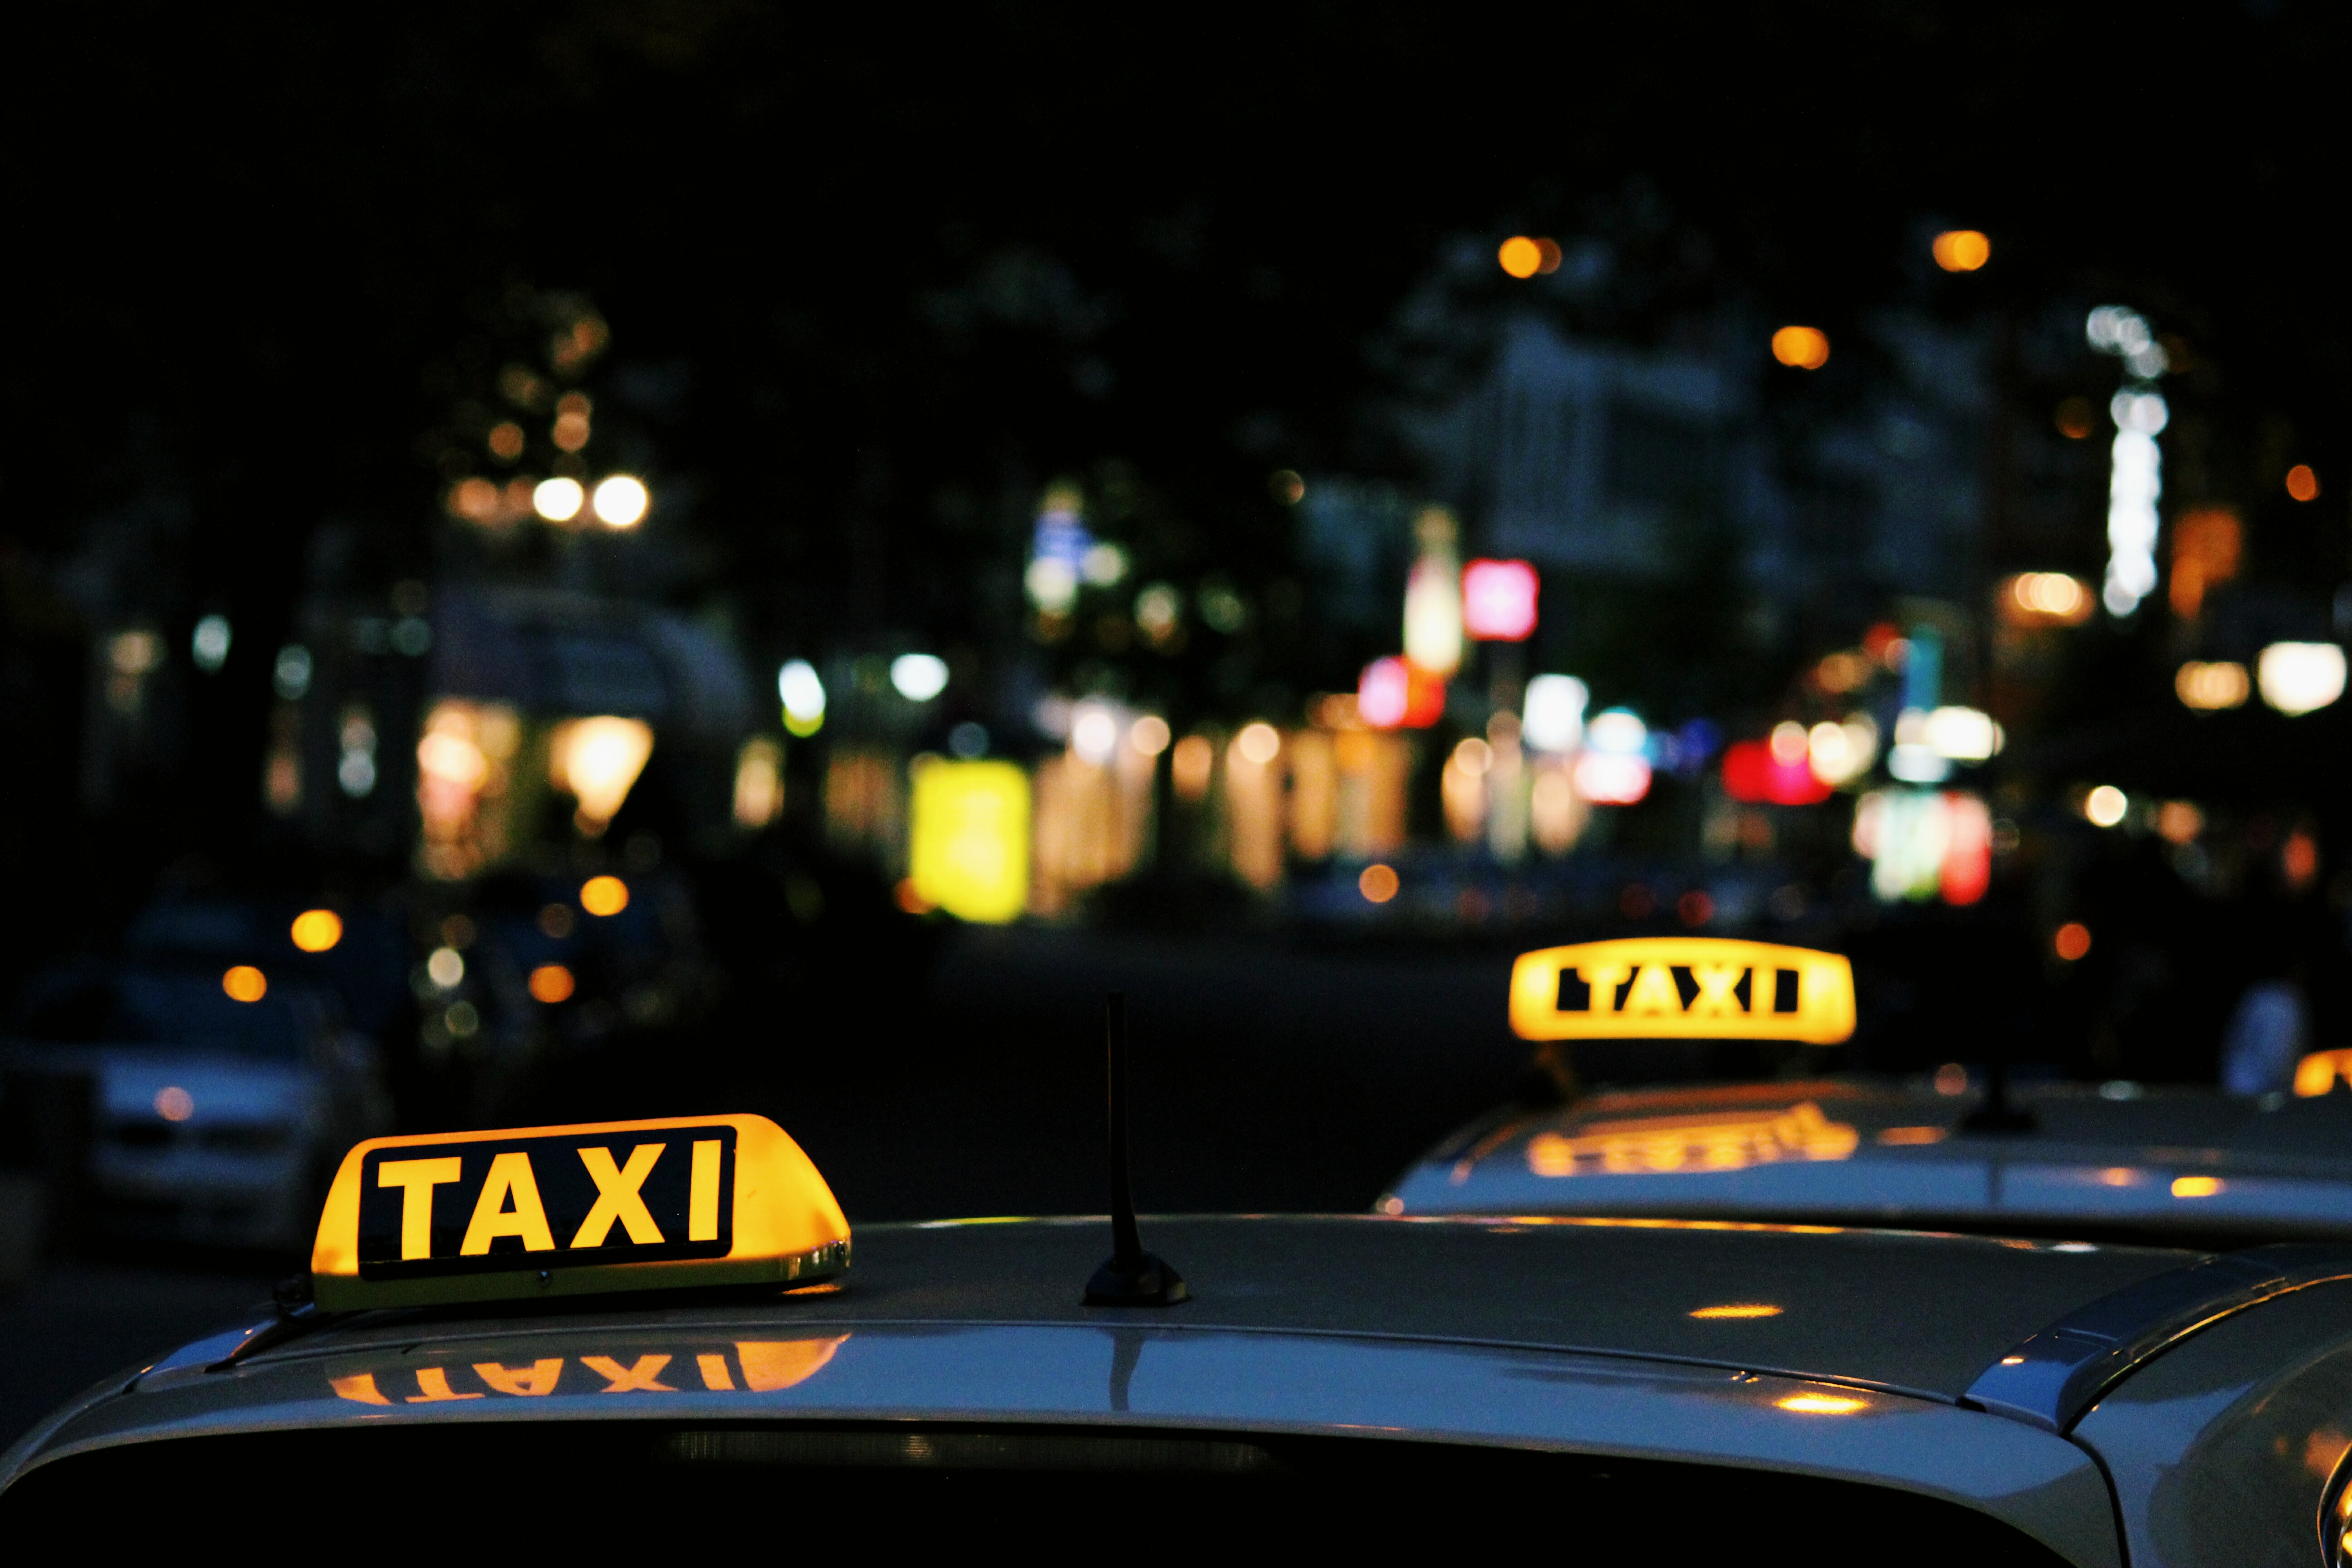 taxis
Lien vers: taxissociaux